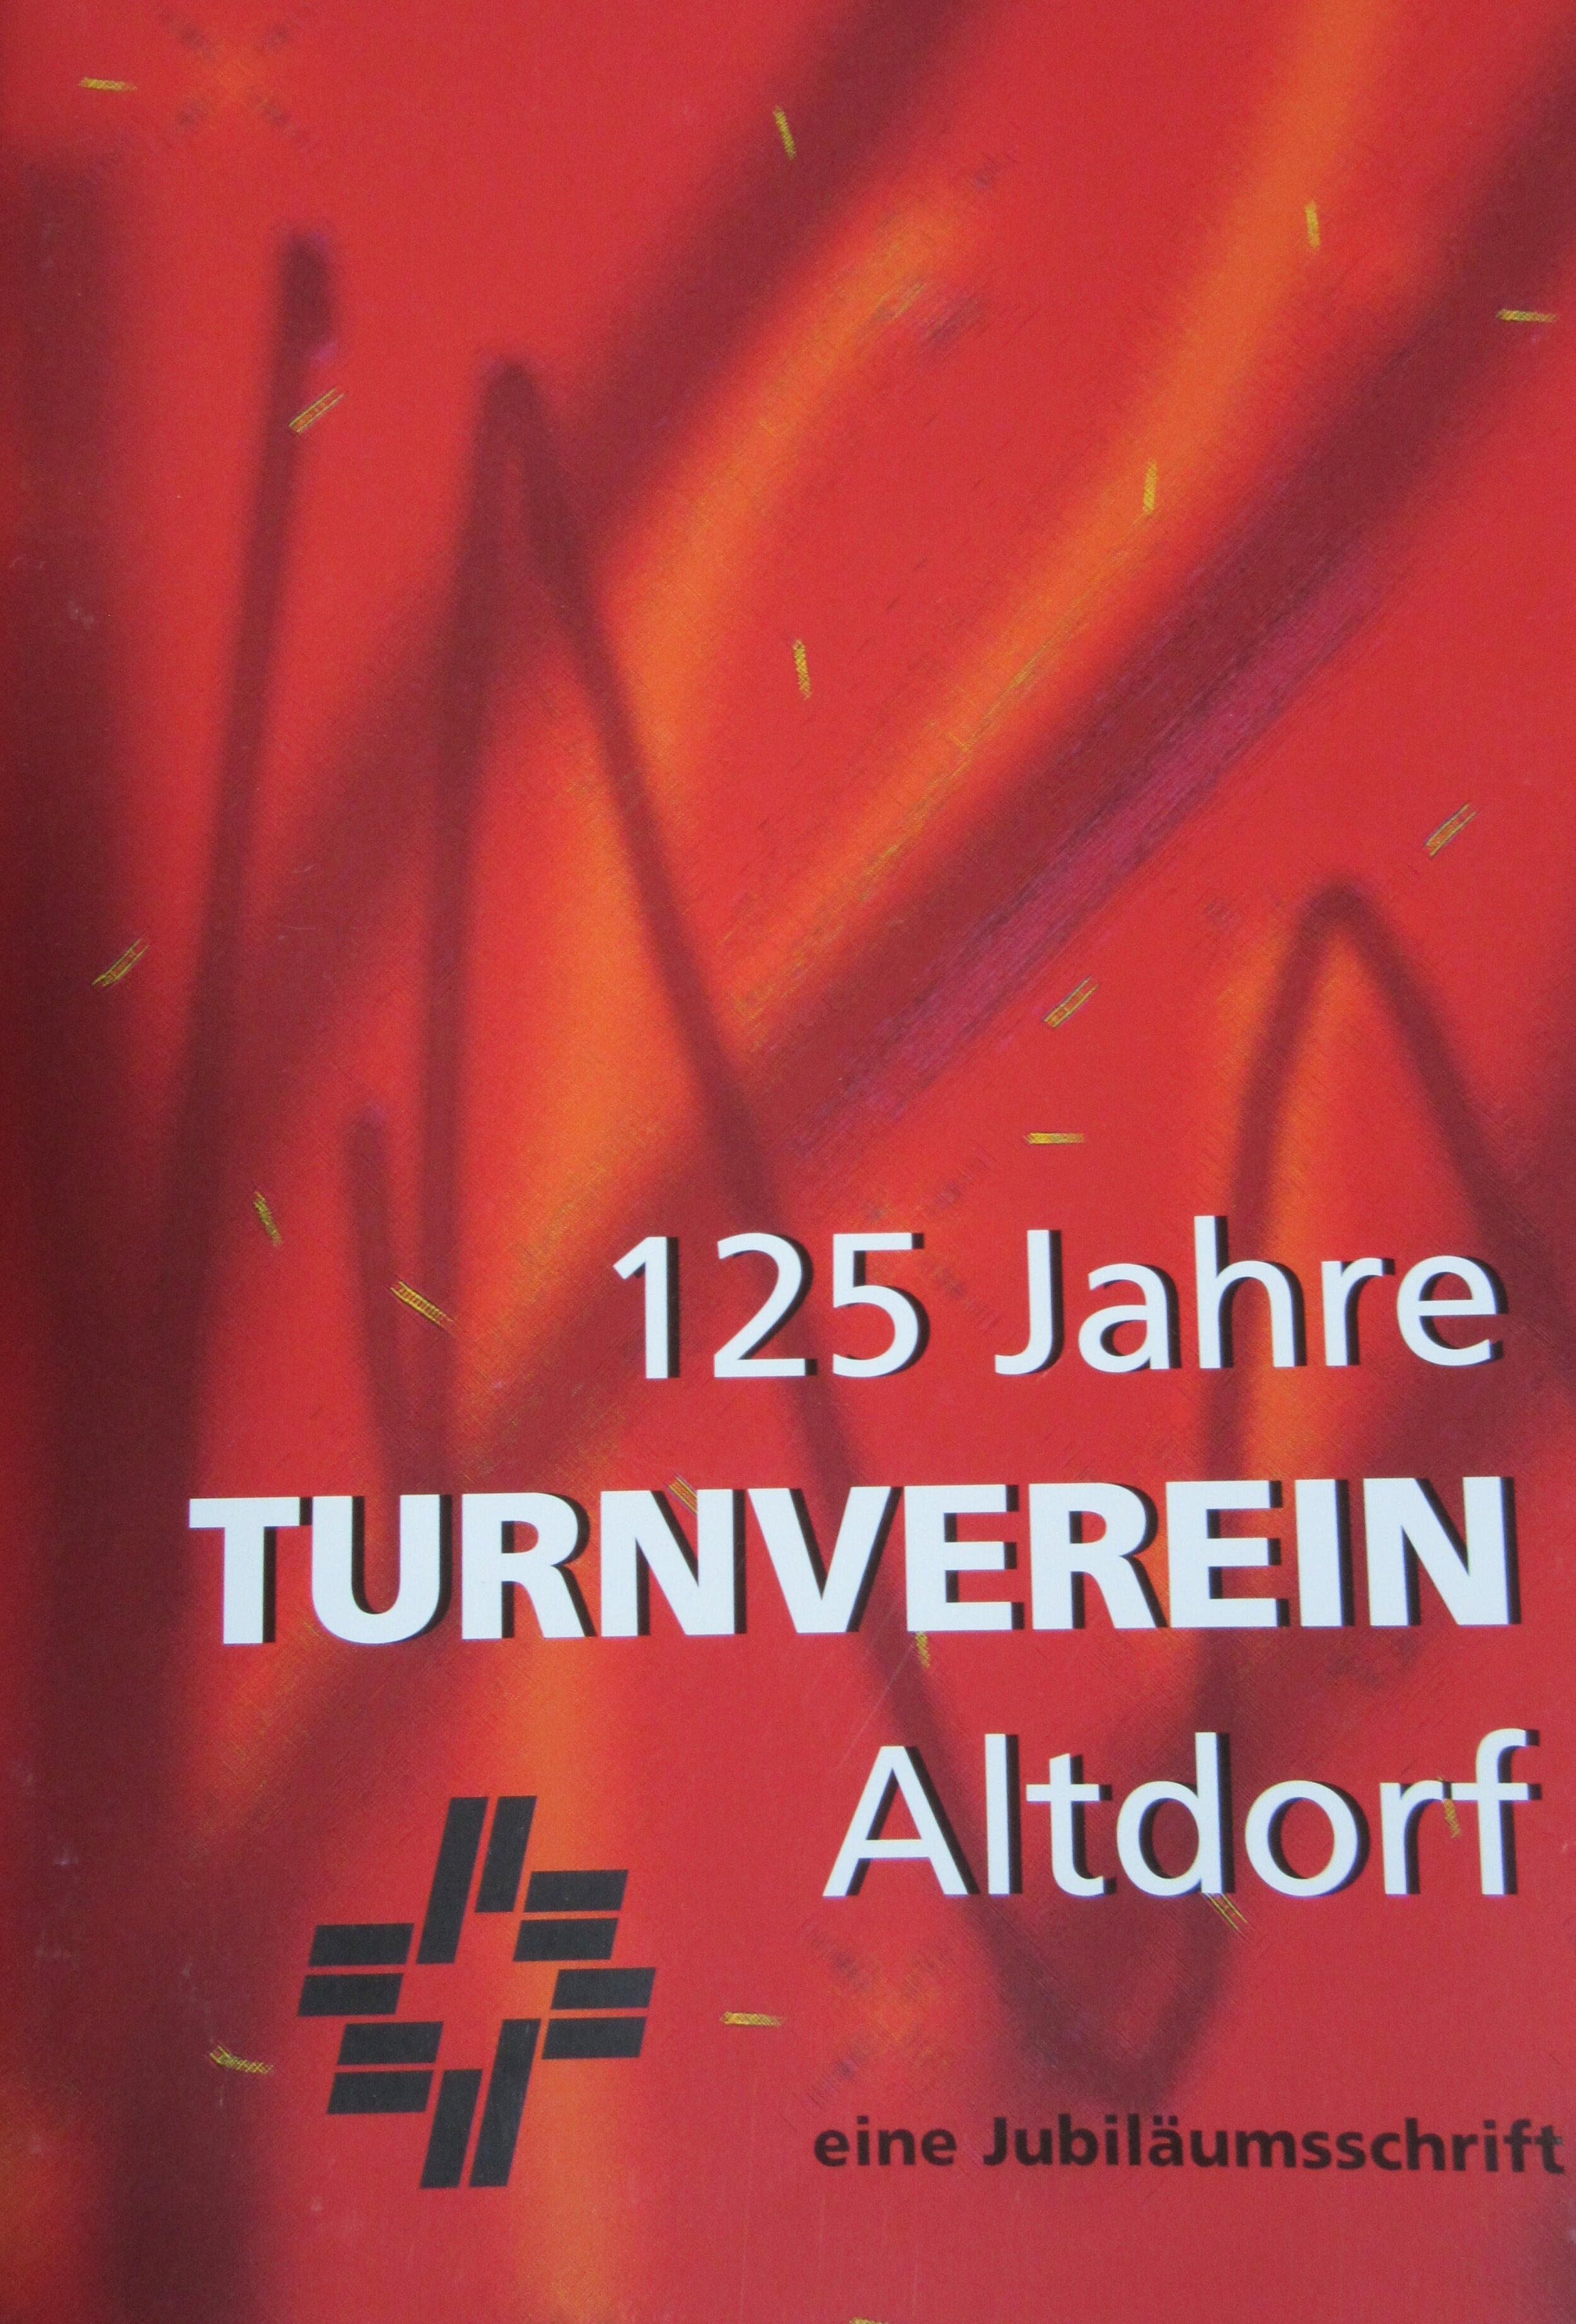 Festschrift 125 Jahre TV Altdorf-min.jpg